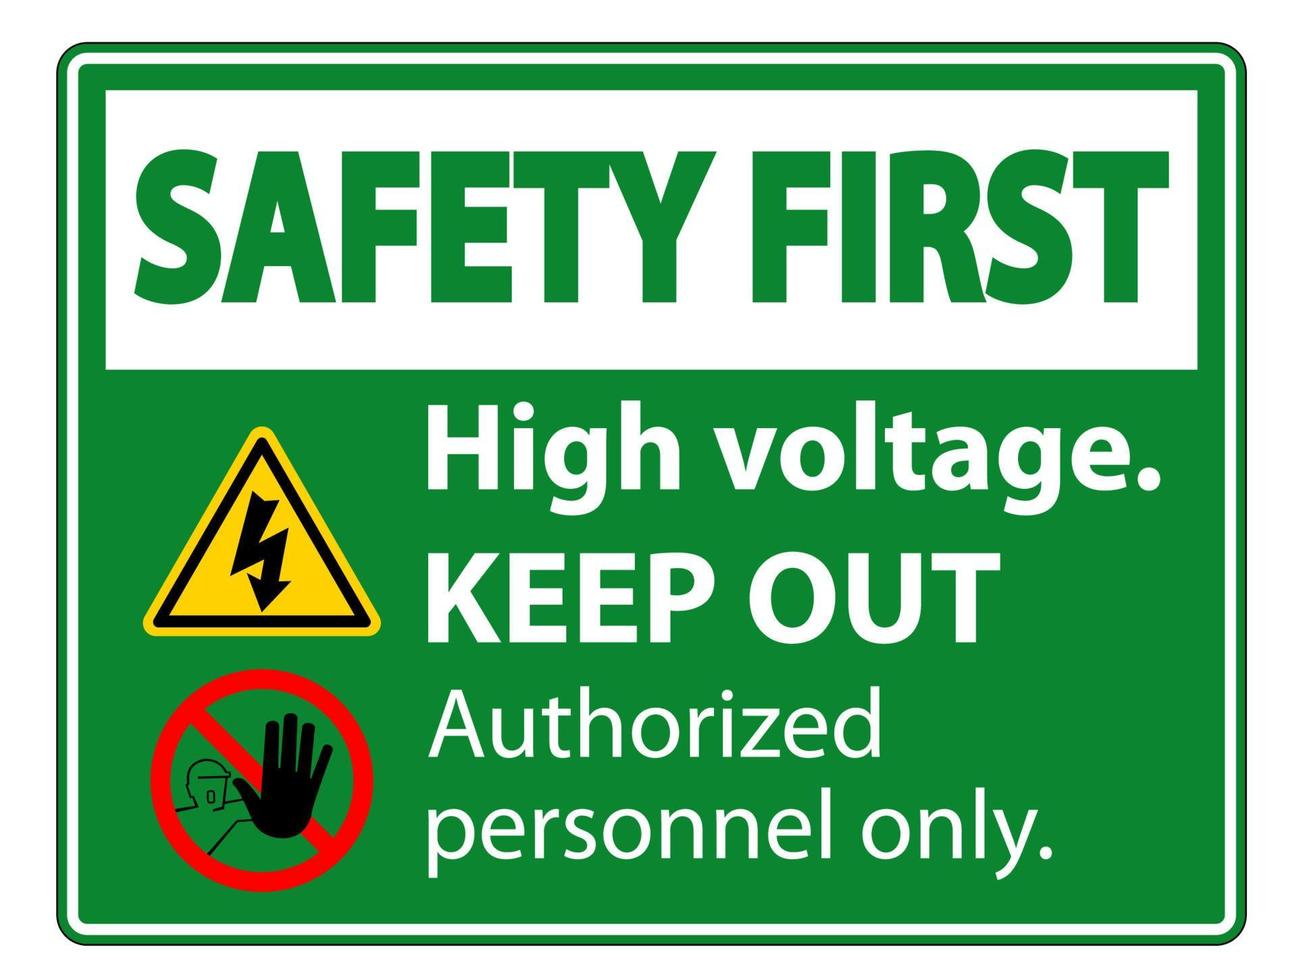 seguridad primero alto voltaje mantenga fuera signo aislado sobre fondo blanco, ilustración vectorial eps.10 vector